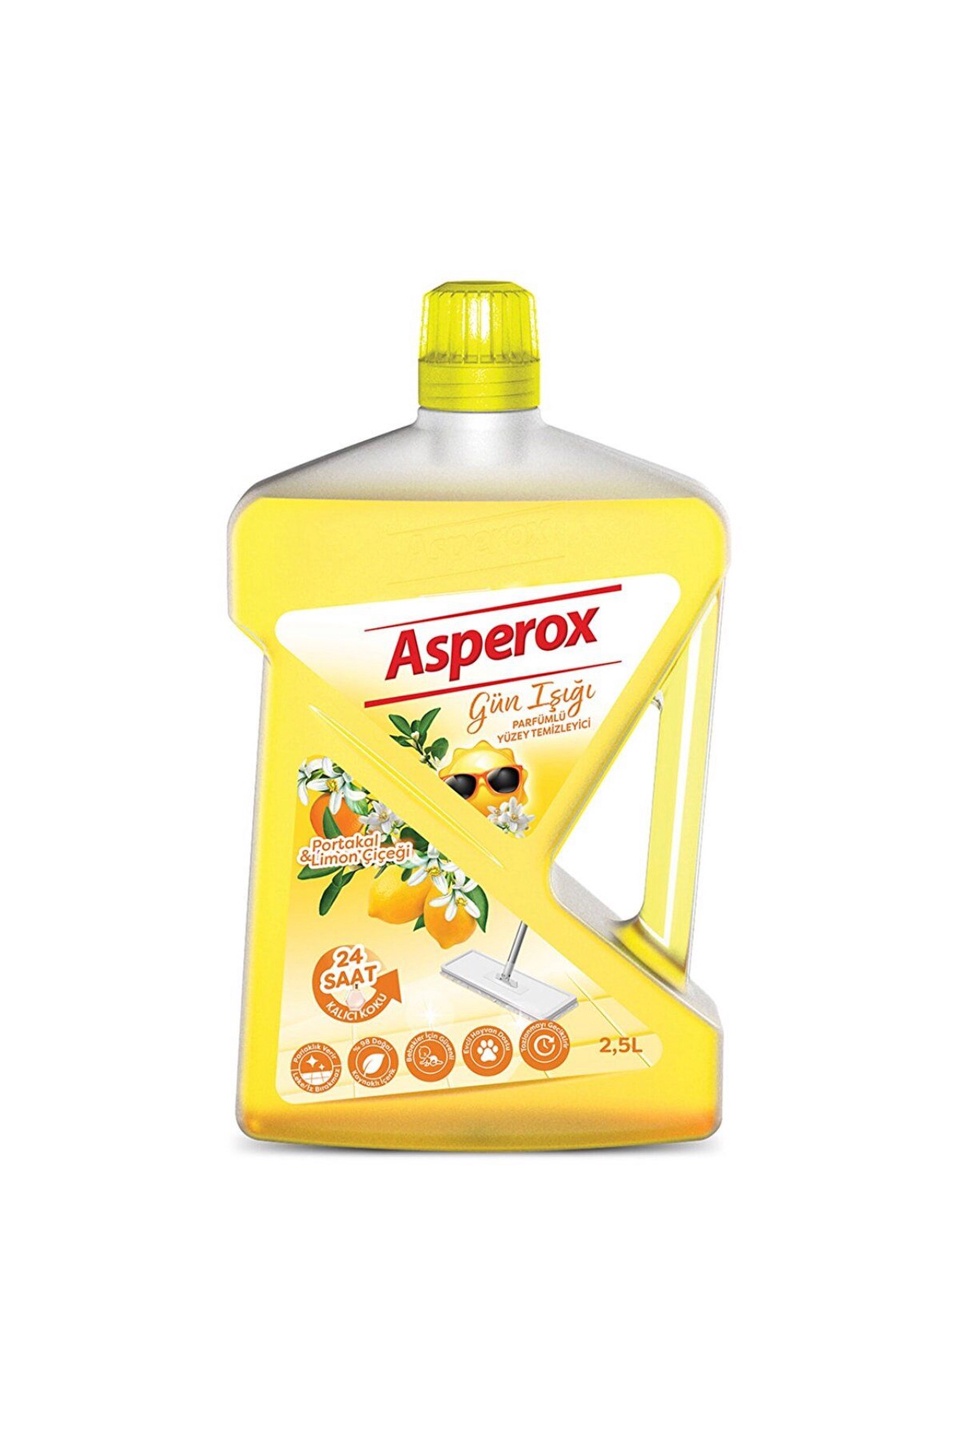 Средство для мытья пола Asperox 2,5 л «Апельсин и лимон» - 350 ₽, заказать онлайн.